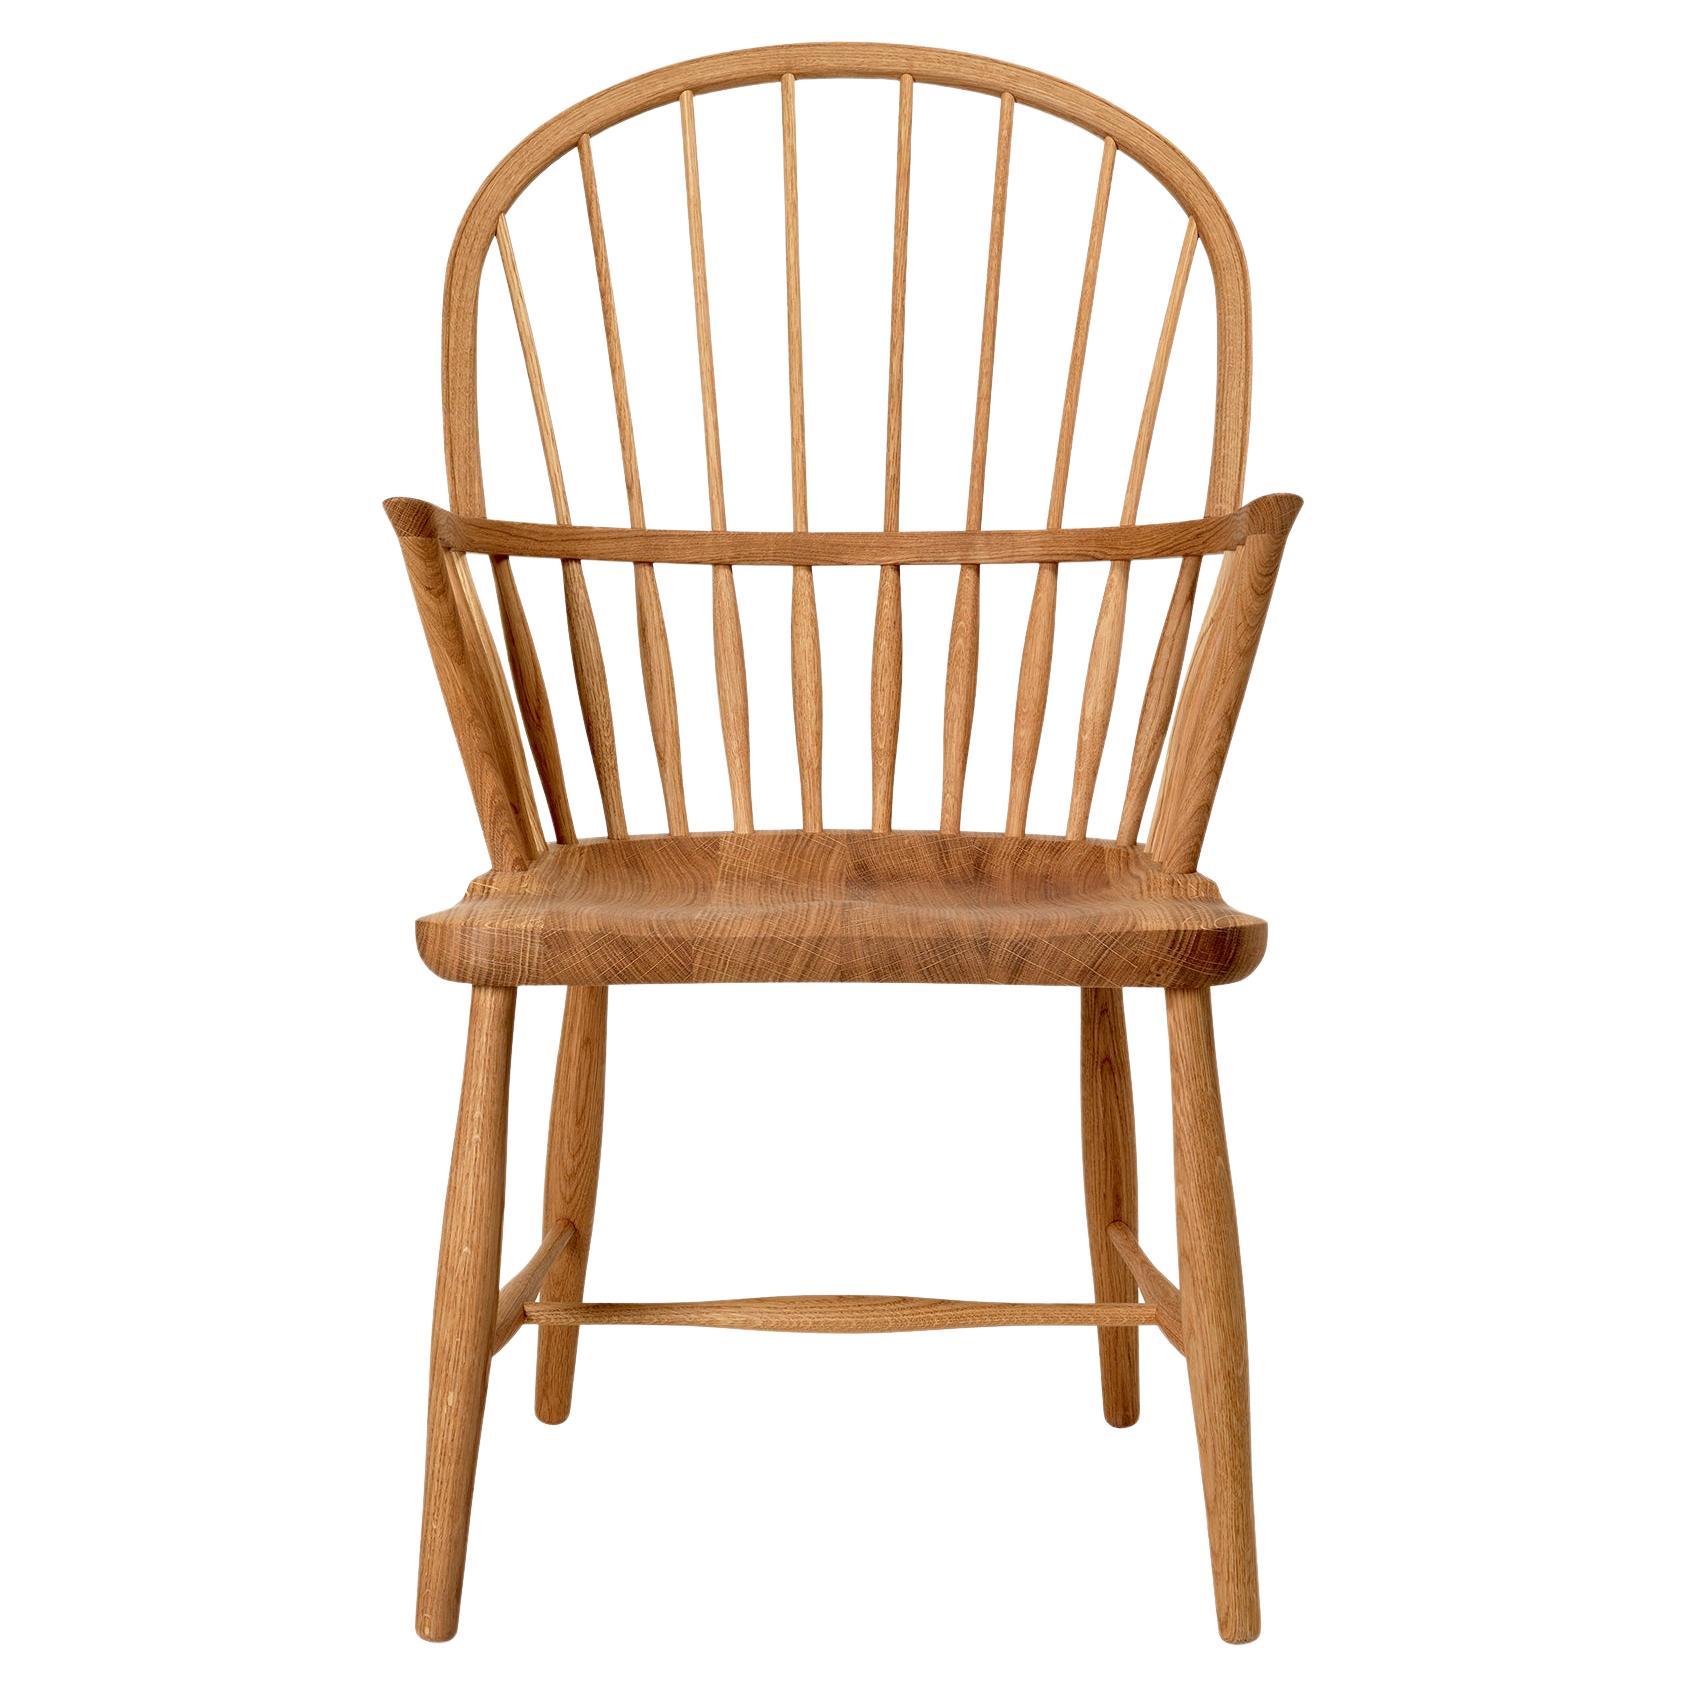 Frits Henningsen 'FH38 Windsor' Chair in Soaped Oak for Carl Hansen & Son For Sale 4